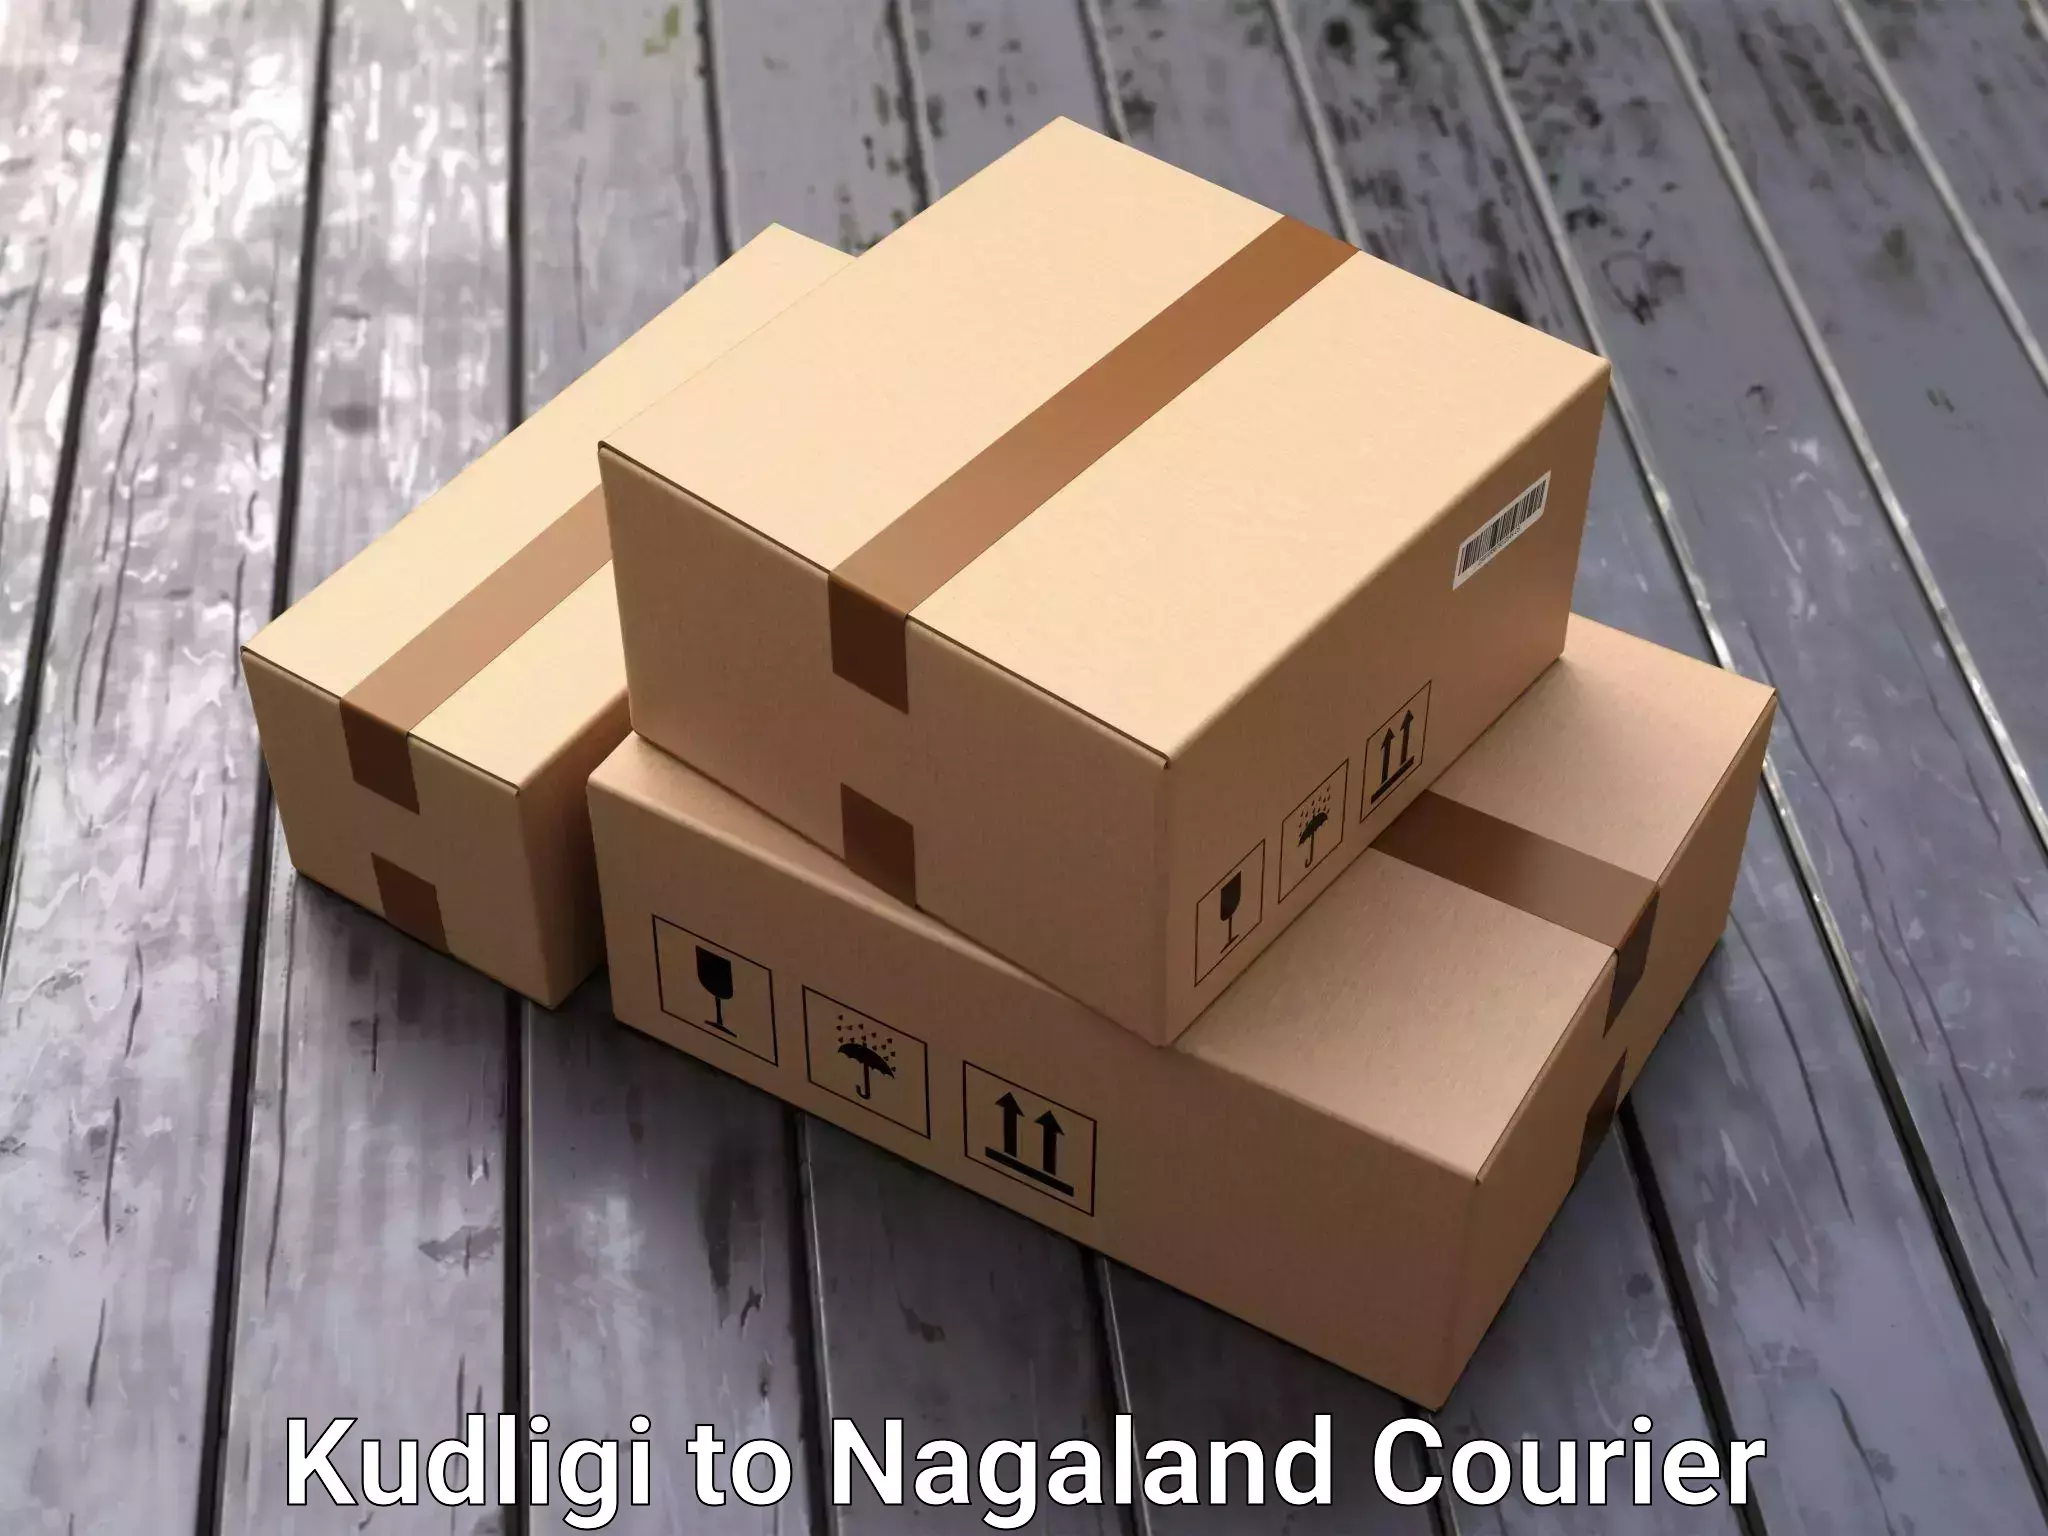 Furniture delivery service Kudligi to Nagaland